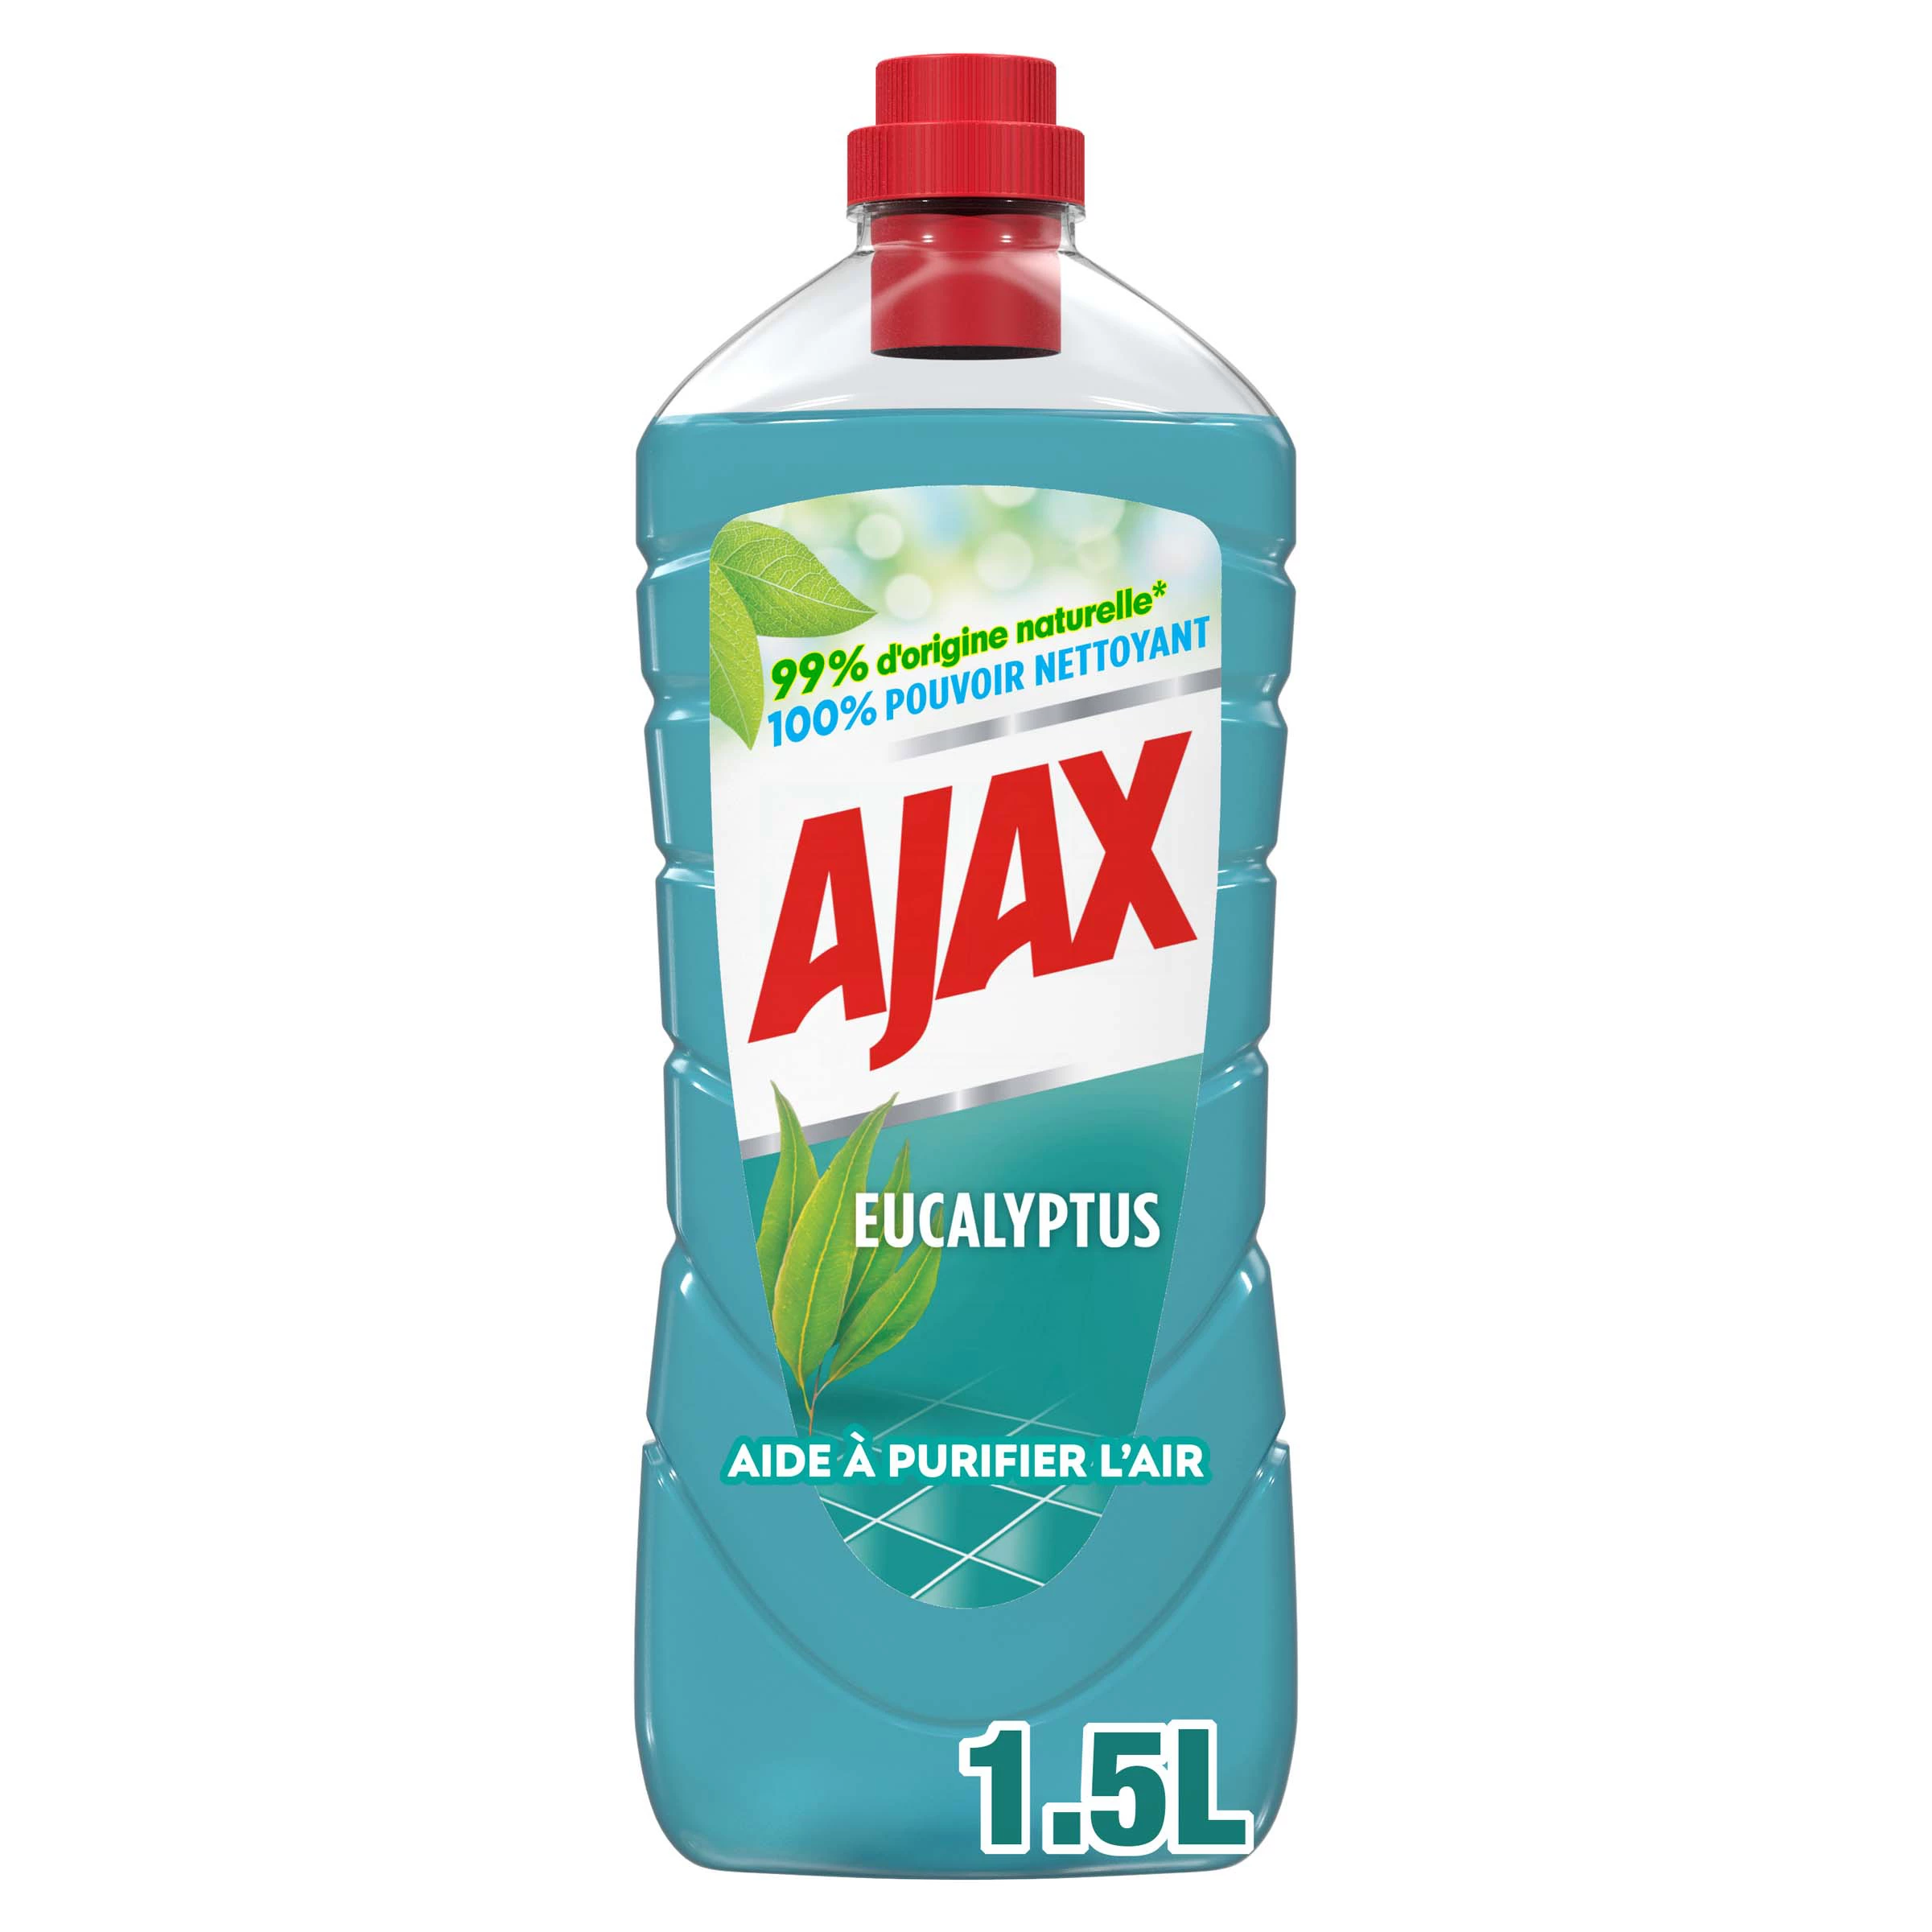 El limpiador multiusos y para pisos domésticos purifica el aire con eucalipto ecorresponsable - AJAX